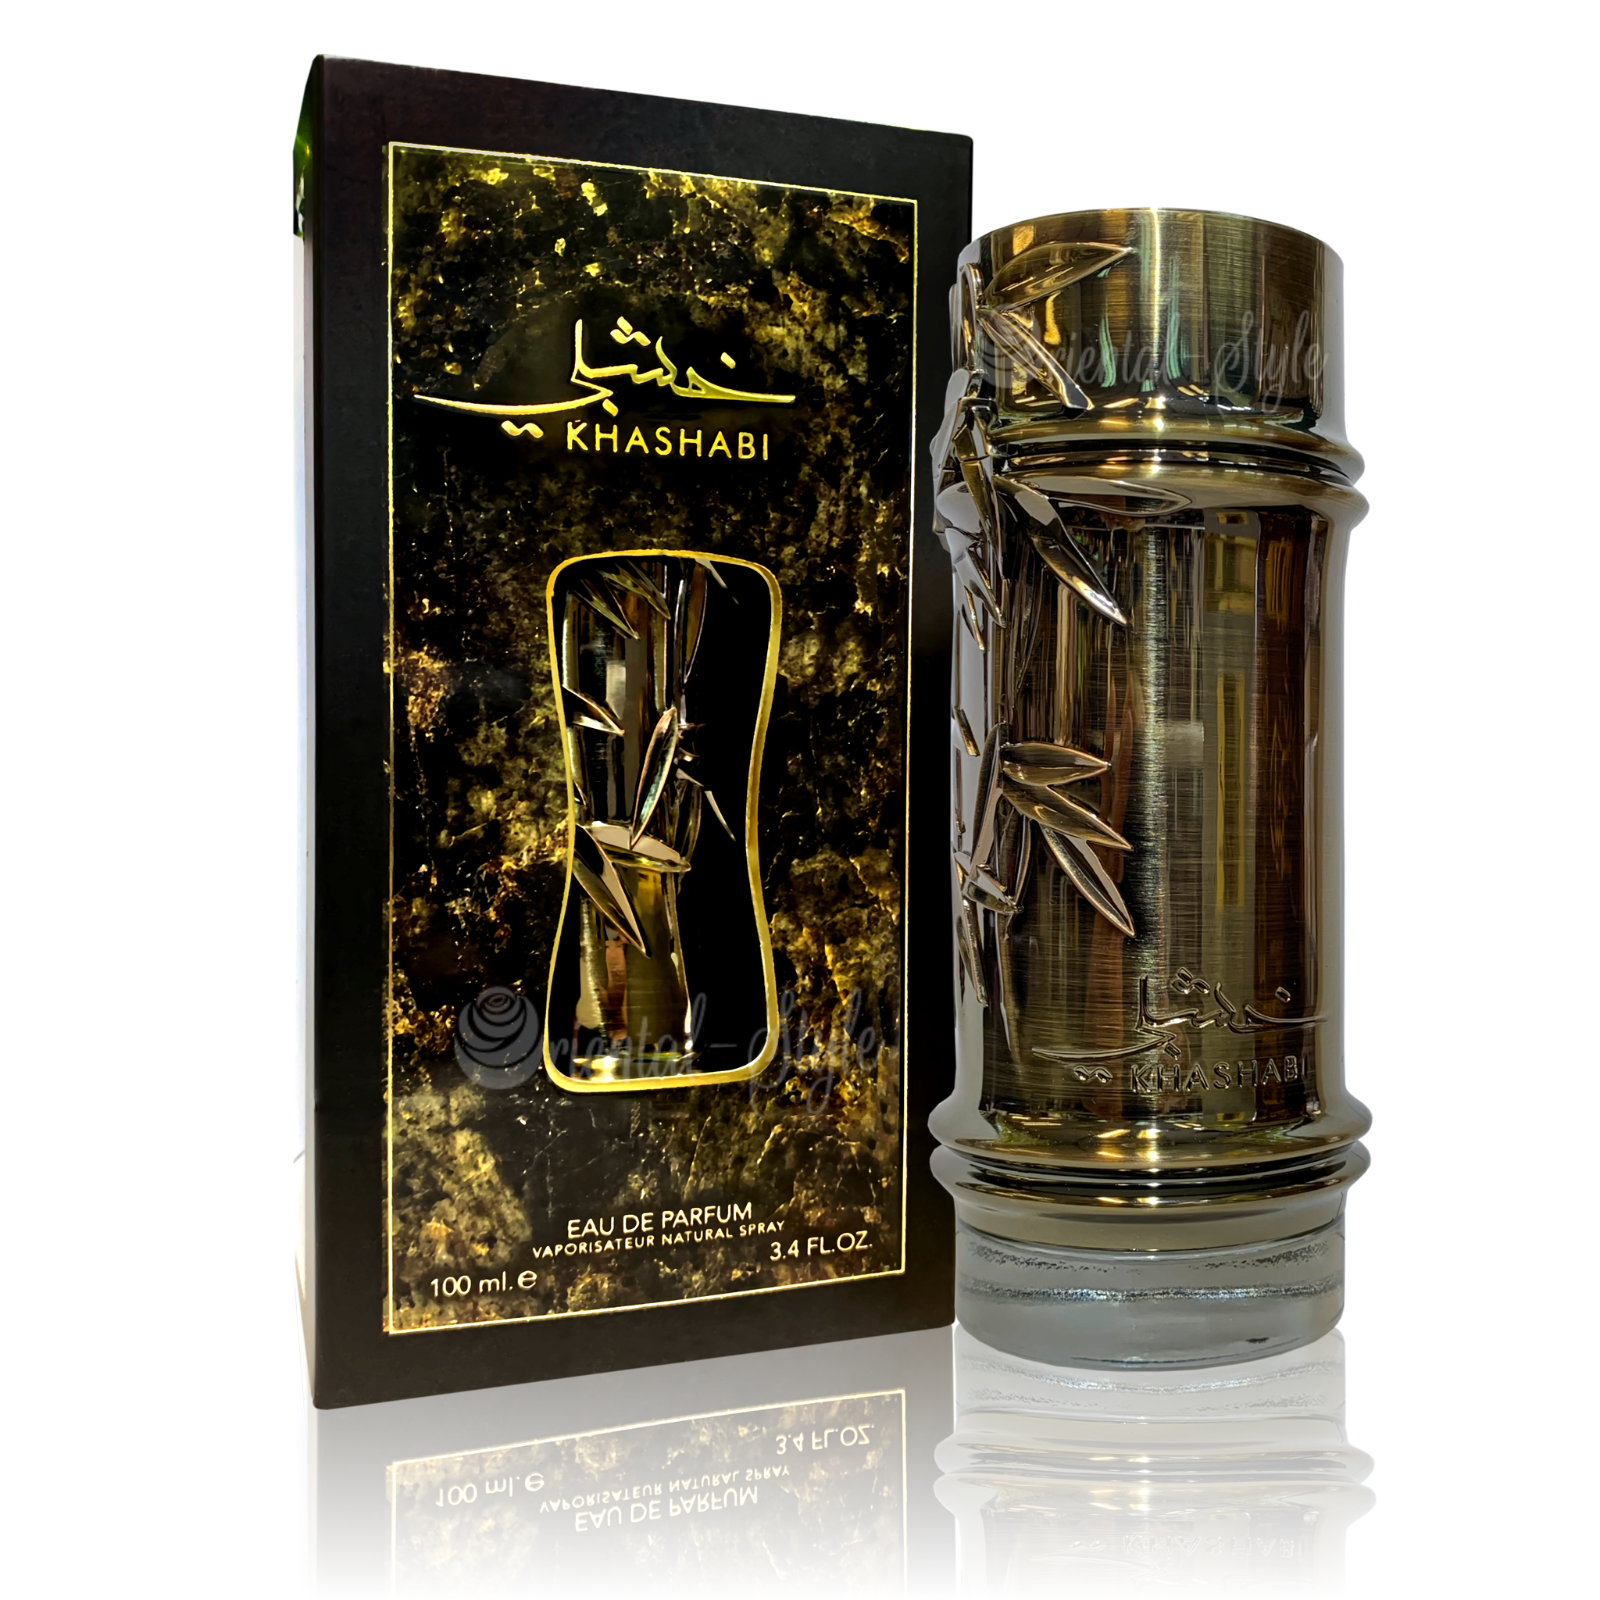 Khashabi EDP (100ml) spray perfume by Lattafa | Khan El Khalili